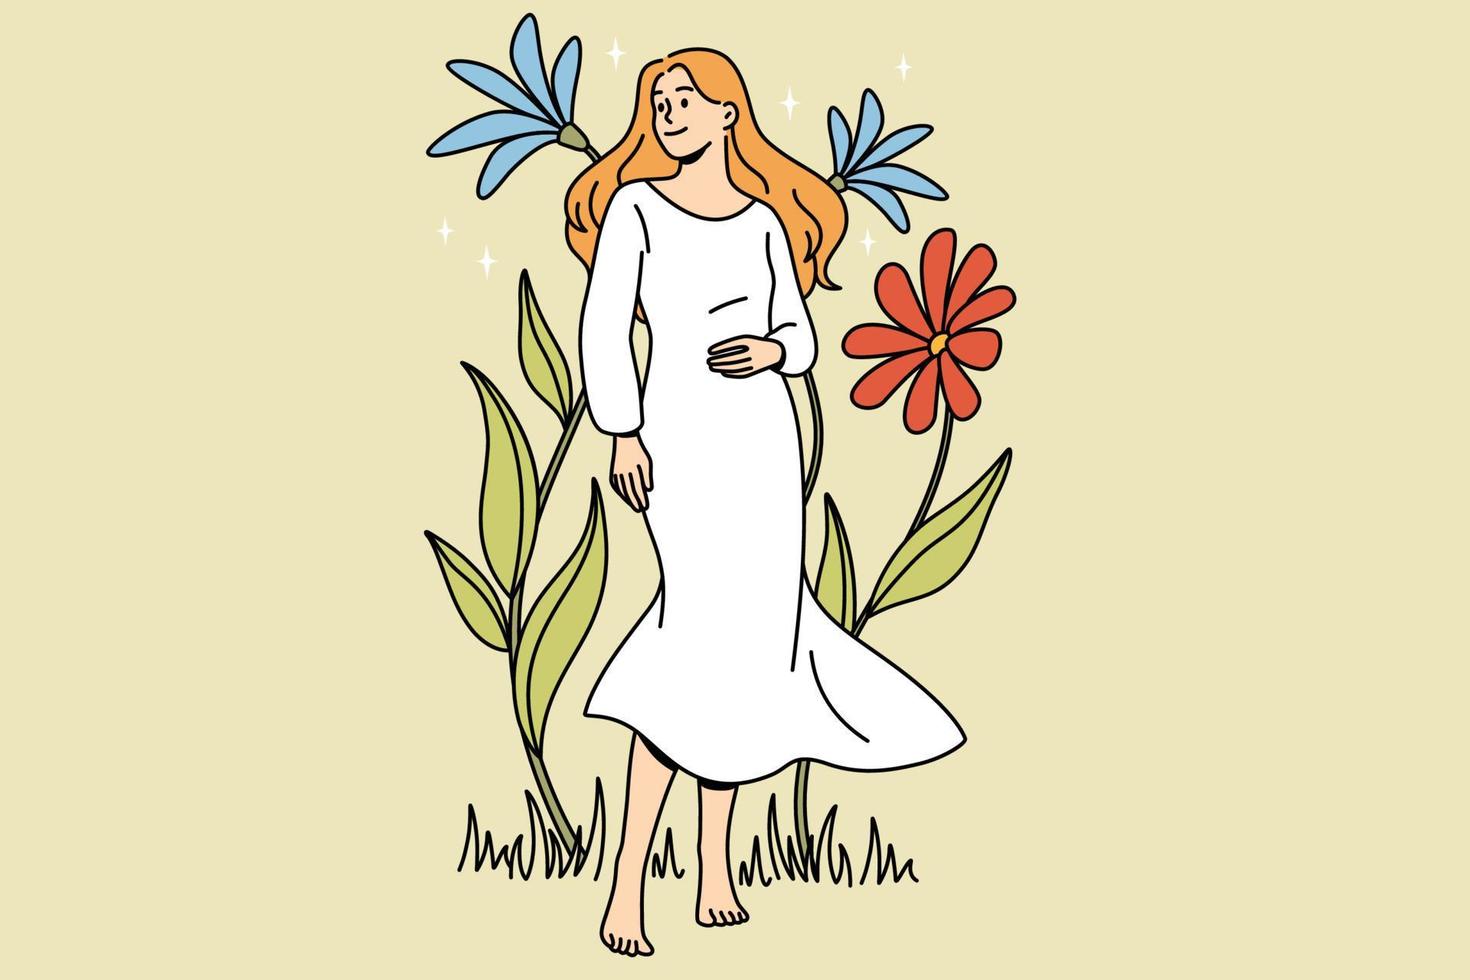 belleza natural y concepto de naturaleza. joven mujer rubia sonriente en vestido blanco descalzo de pie entre flores de colores florecientes ilustración vectorial vector